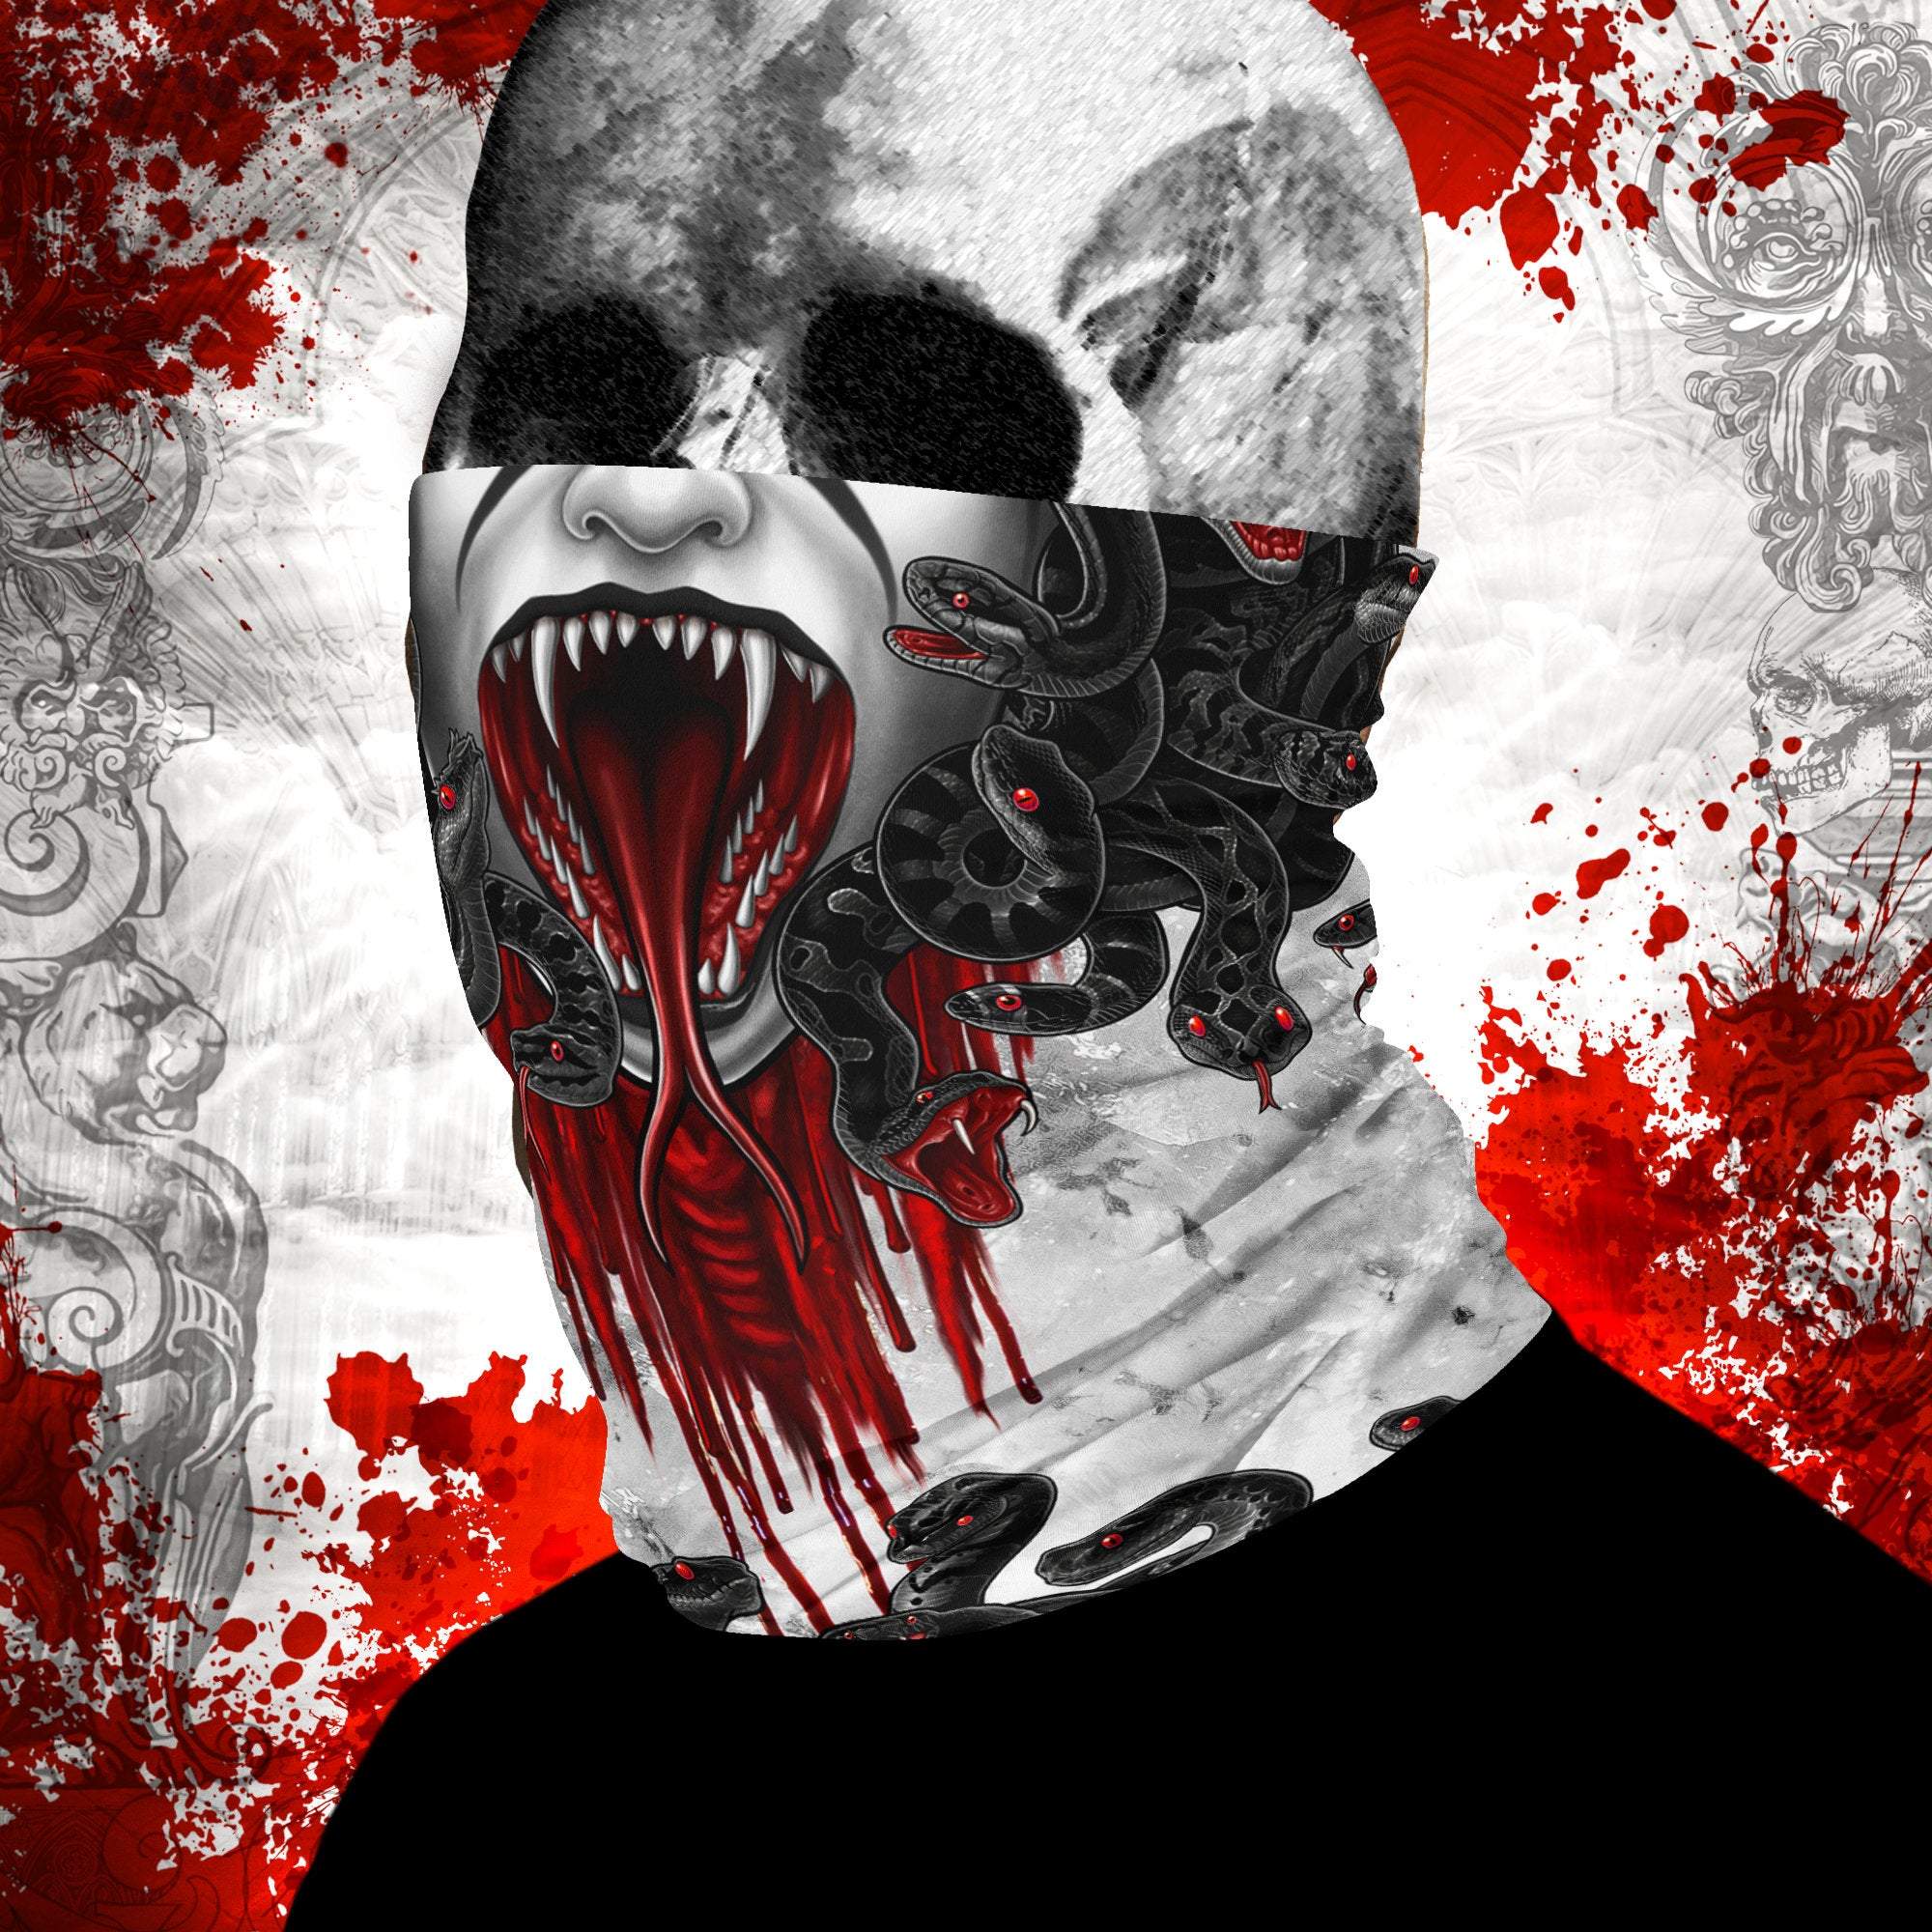 Medusa Neck Gaiter, Face Mask, Head Covering, Snakes Headband, White Goth, Skull Art - Black, 2 Face Options - Abysm Internal